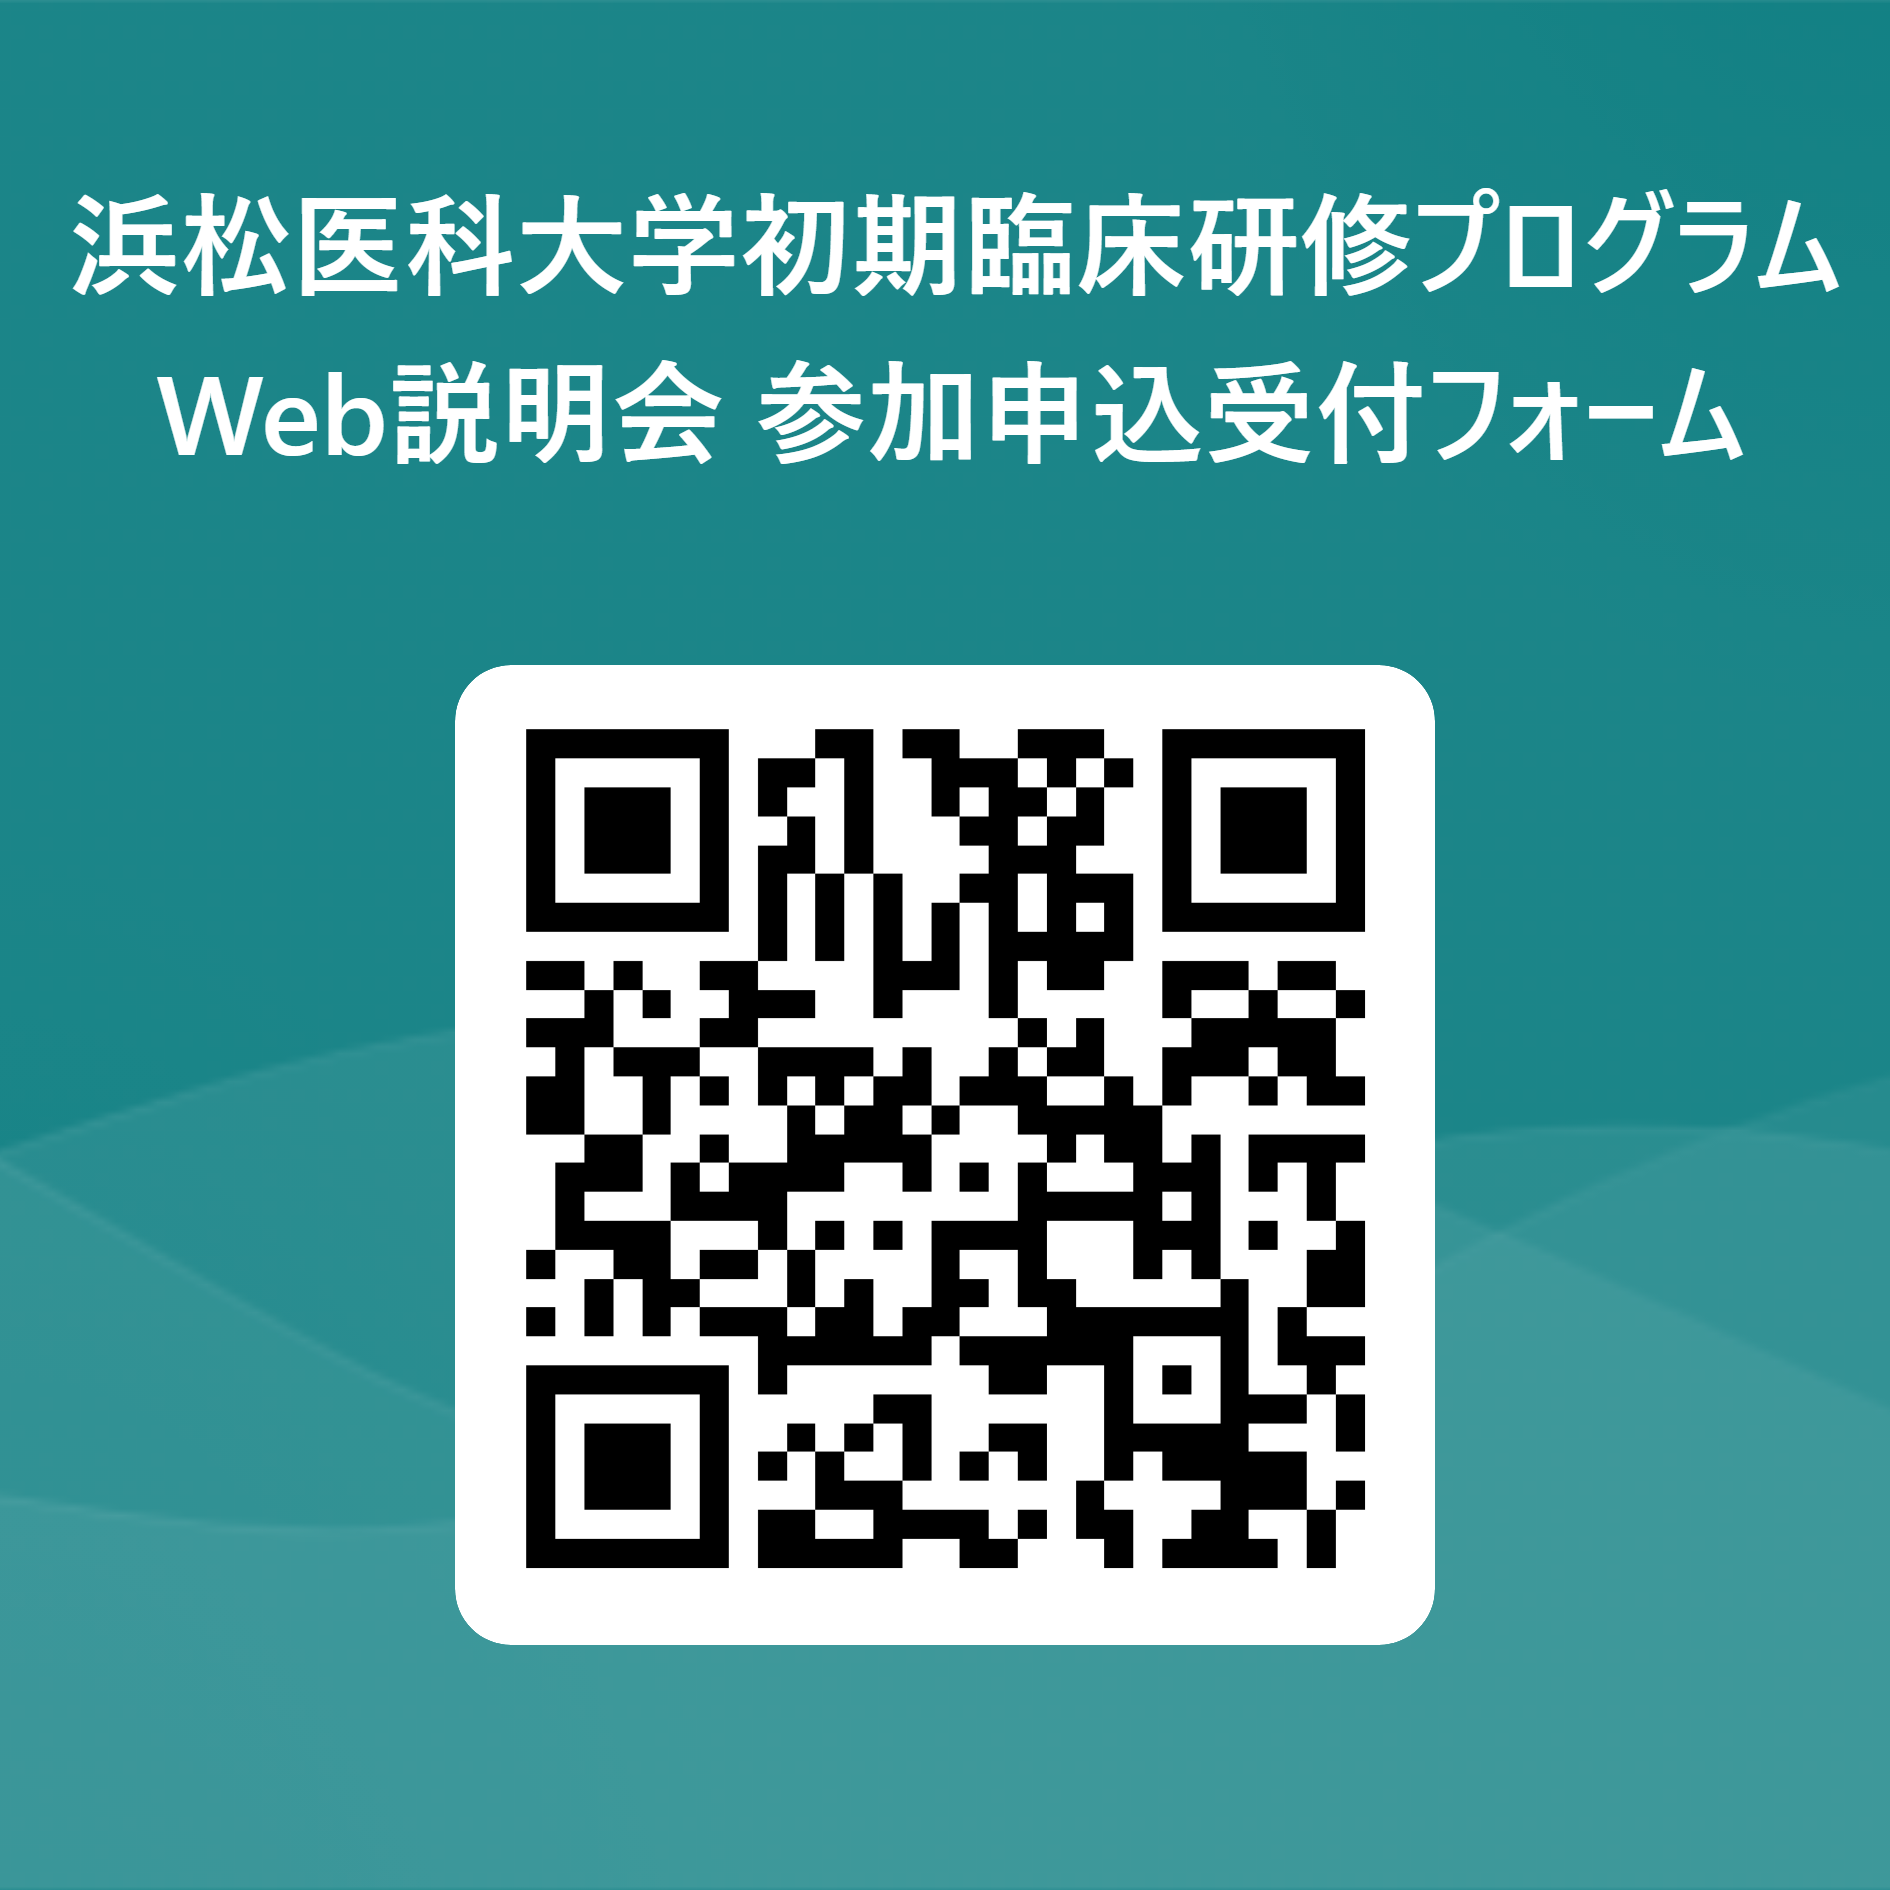 浜松医科大学初期臨床研修プログラムWeb説明会 参加申込受付フォーム 用 QR コード.png